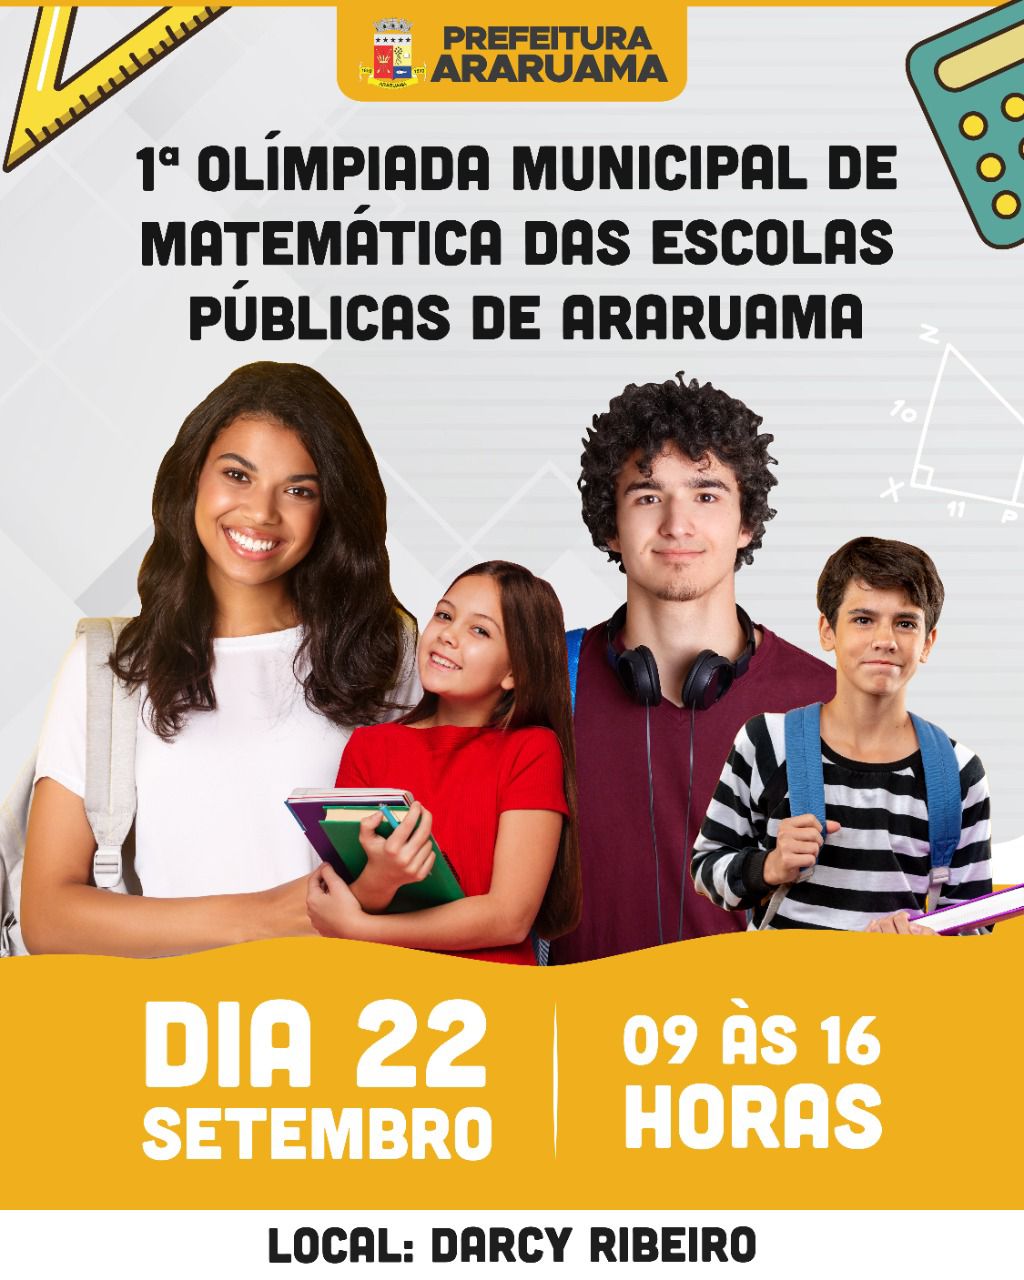 Prefeitura de Araruama vai realizar a etapa final da 1ª Olimpíada de Matemática das Escolas Públicas Municipais